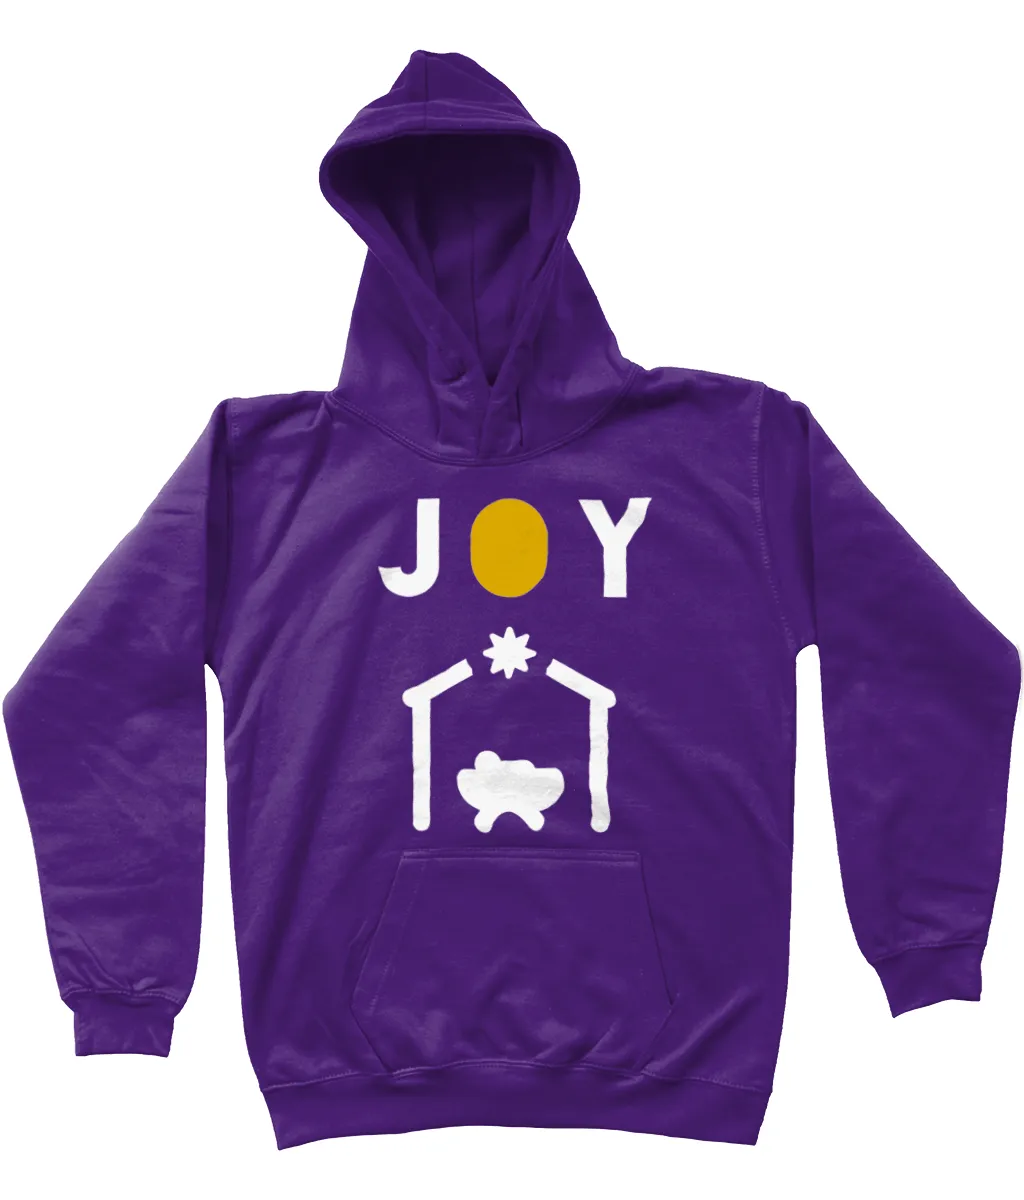 The 'Joy' kids hoodie 